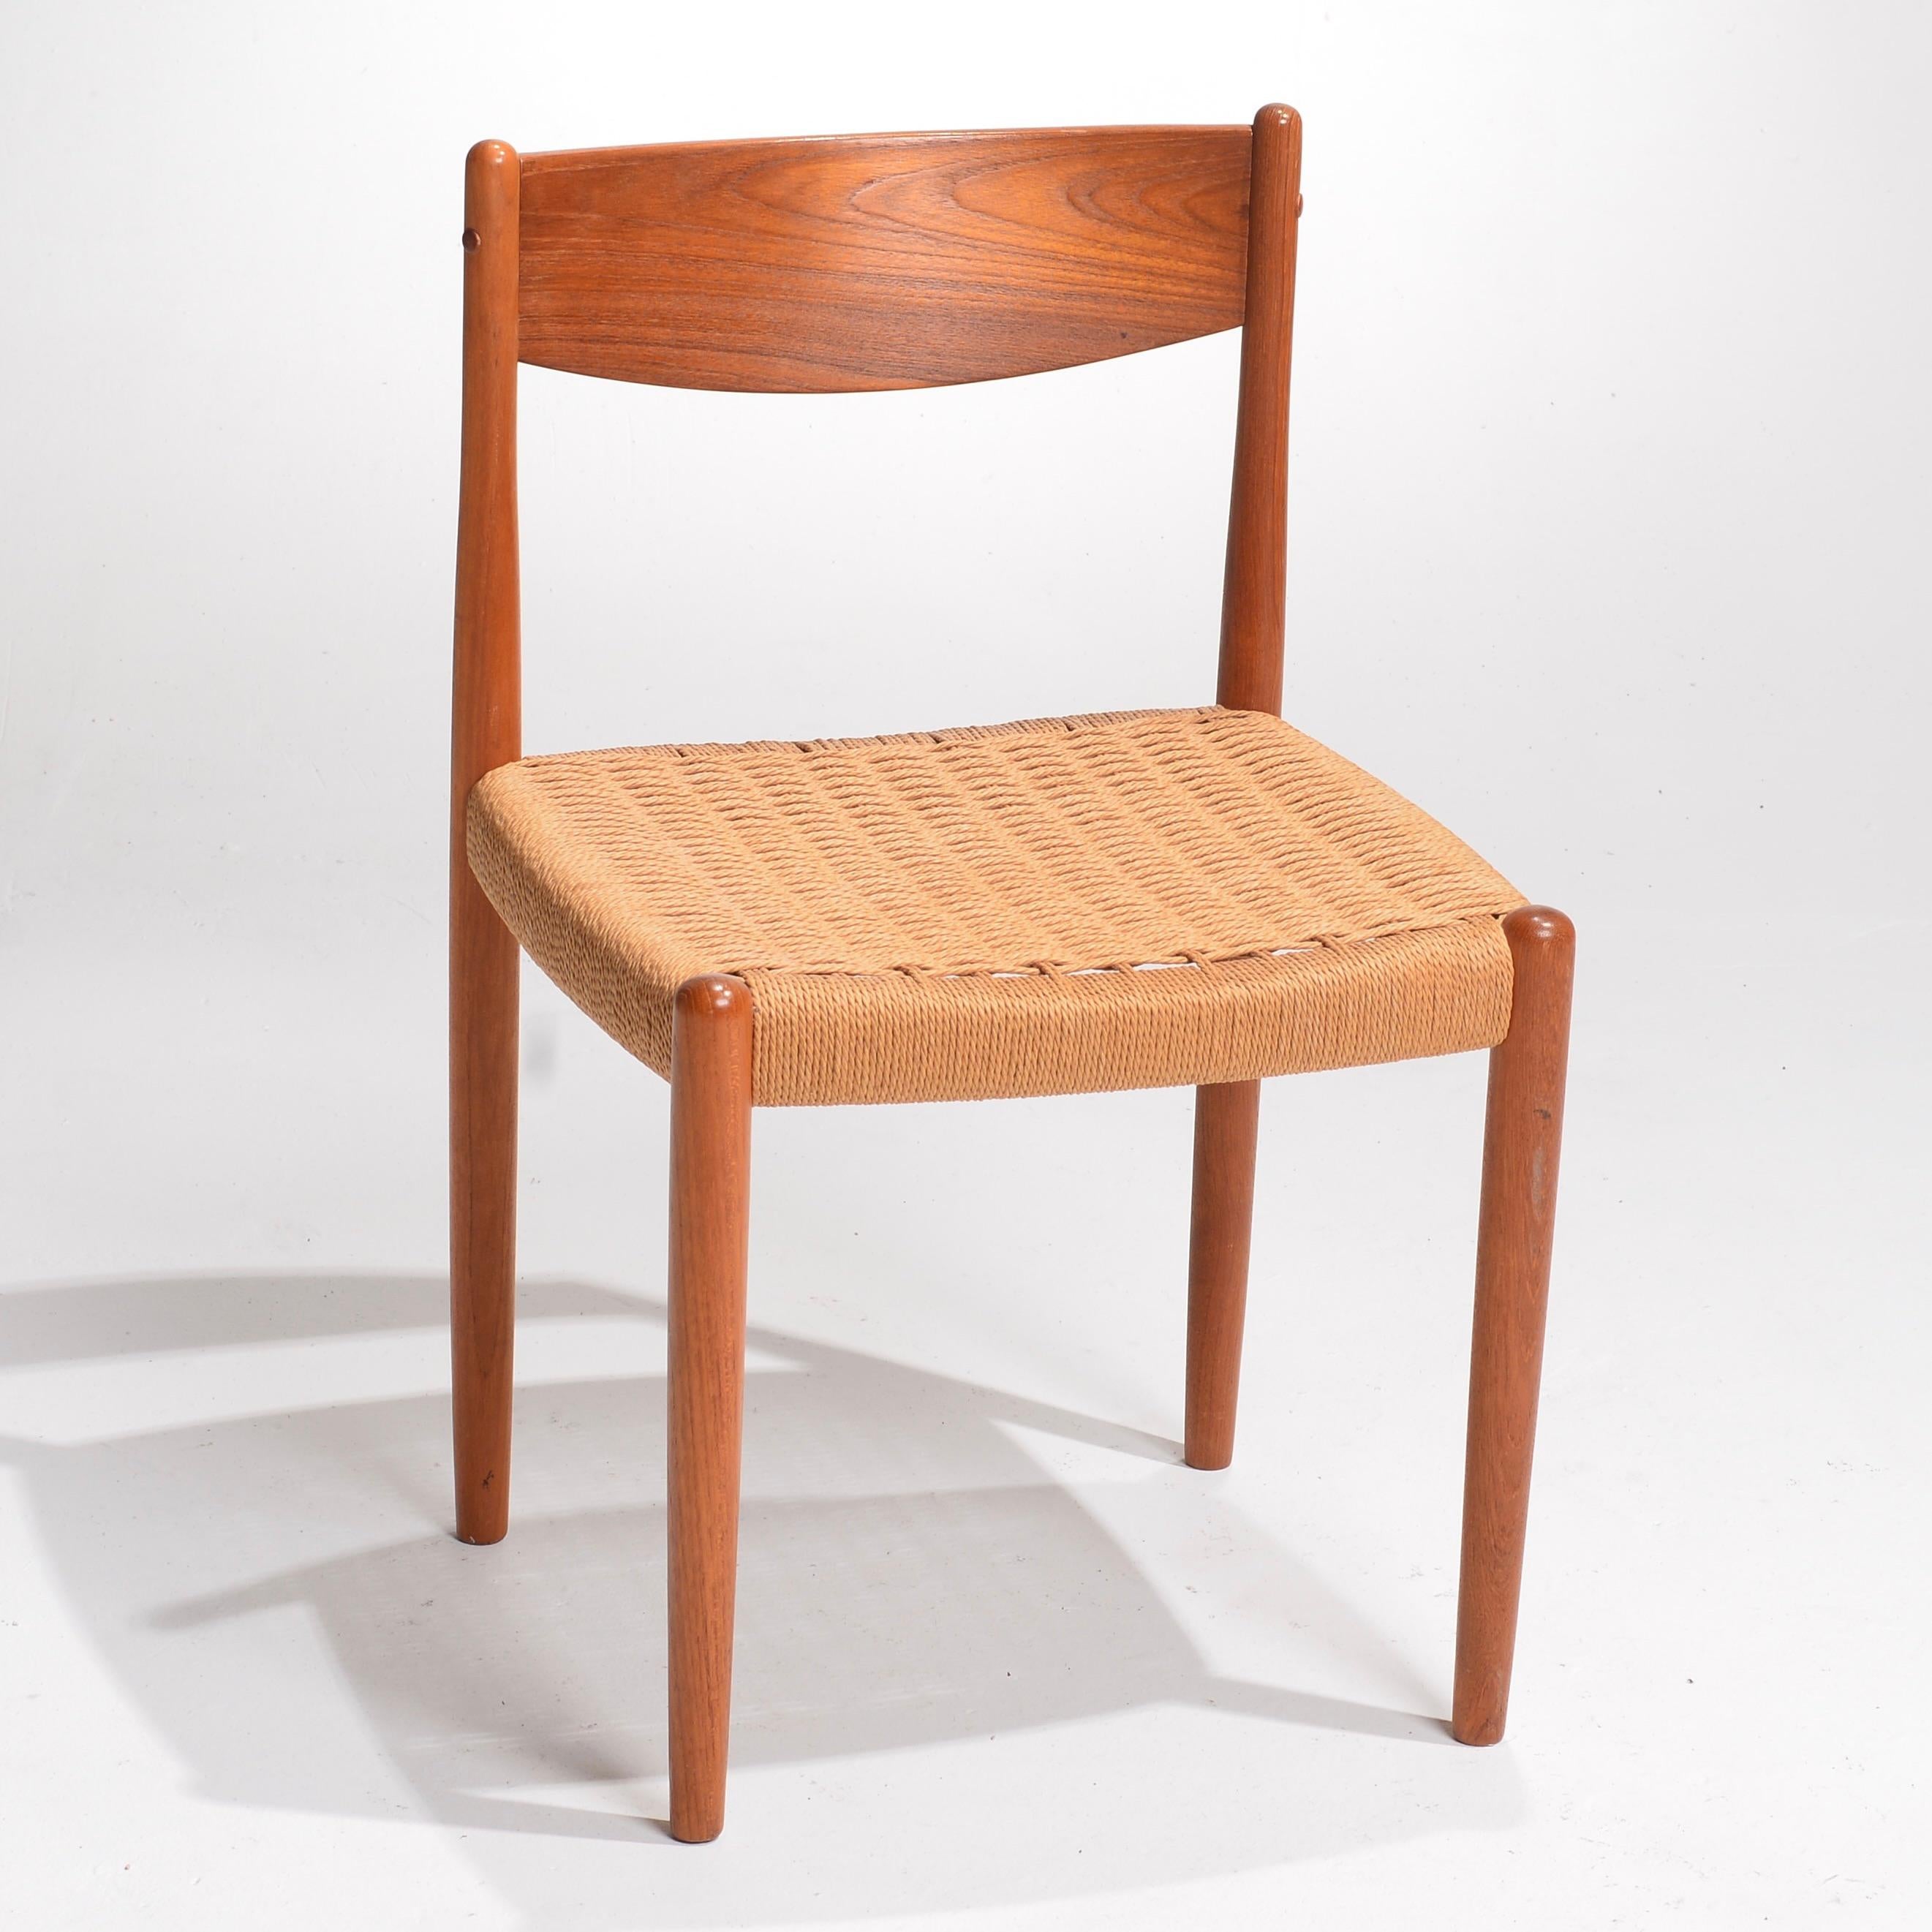 Poul Volther était un designer de meubles danois visionnaire, réputé pour ses créations emblématiques de l'ère moderne du milieu du siècle dernier. Son héritage se perpétue dans des chefs-d'œuvre tels que la Frem Rojle Danish Teak Woven Chair, un